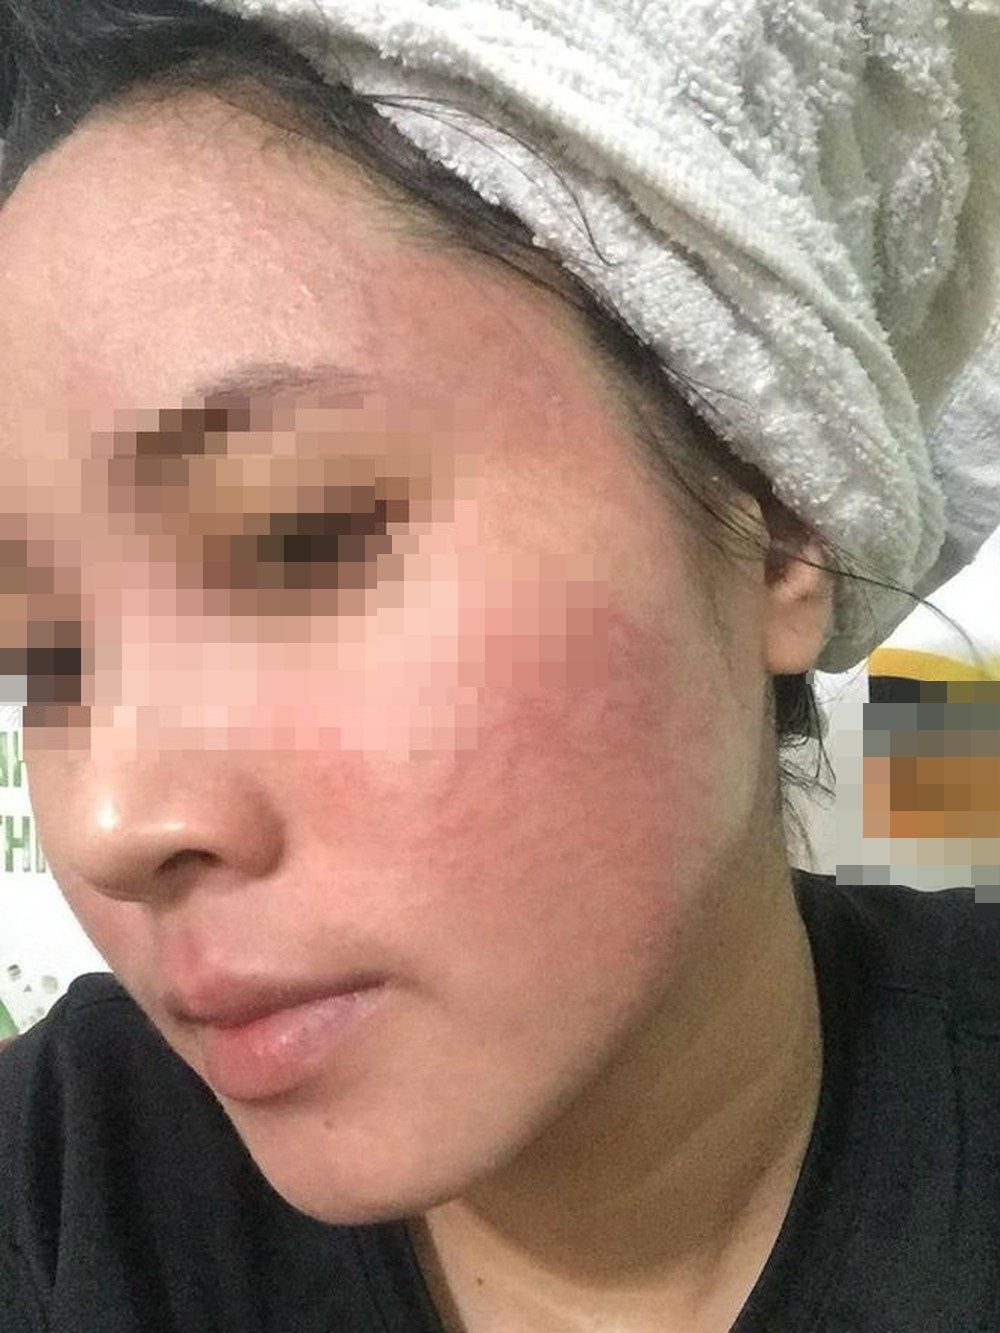 
Cô gái cầu cứu dân mạng vì gương mặt nổi mụn chi chít sau khi sử dụng sản phẩm rượu thuốc bắc - Ảnh: Internet